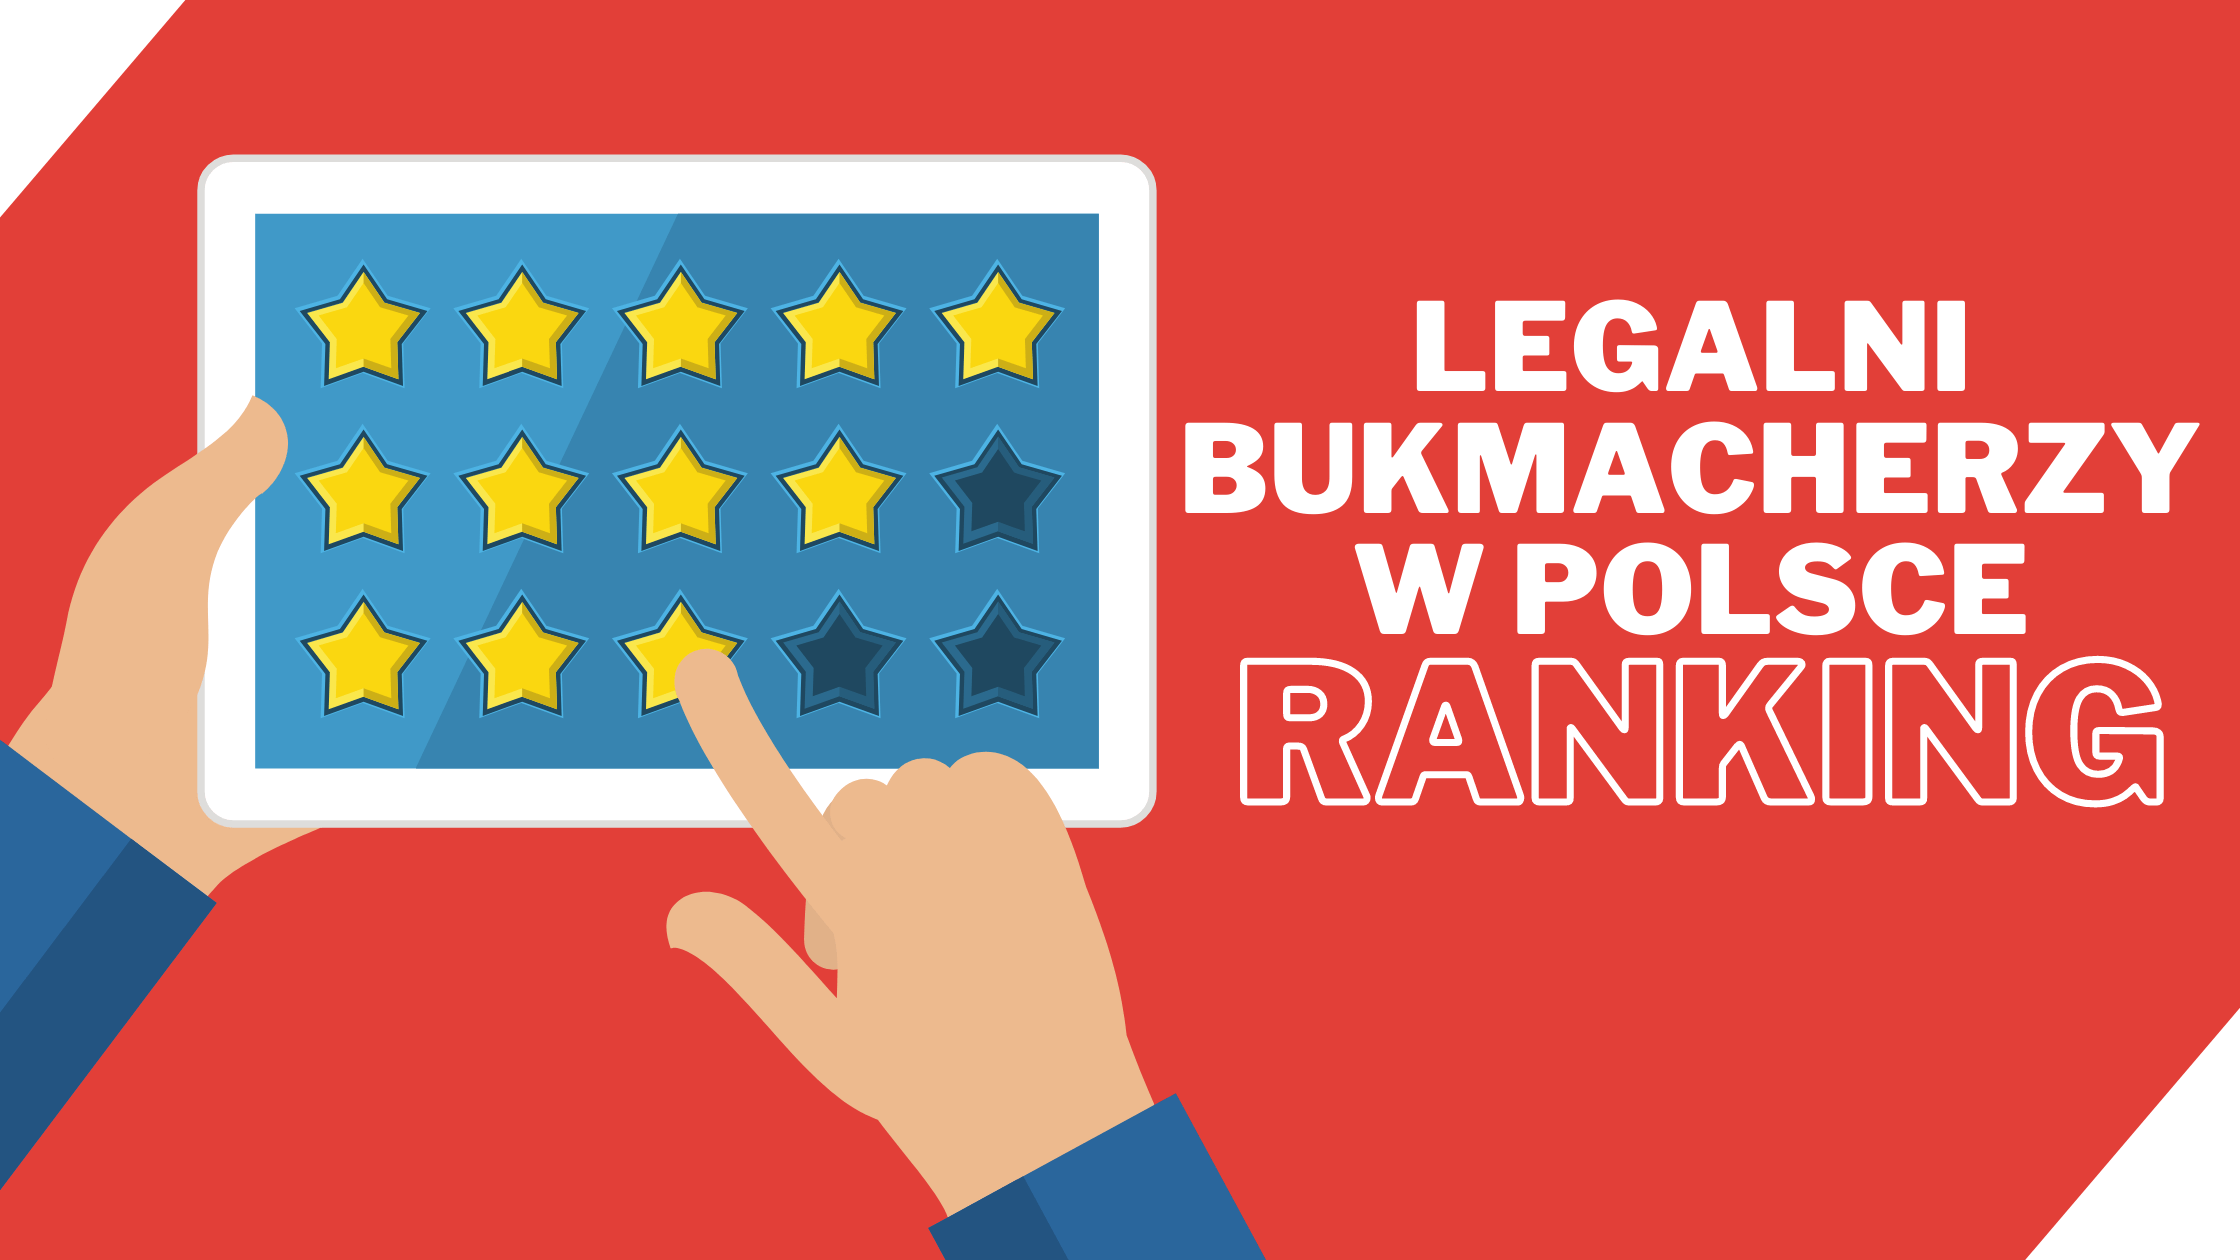 Legalni bukmacherzy w Polsce - Ranking najlepszych operatorów